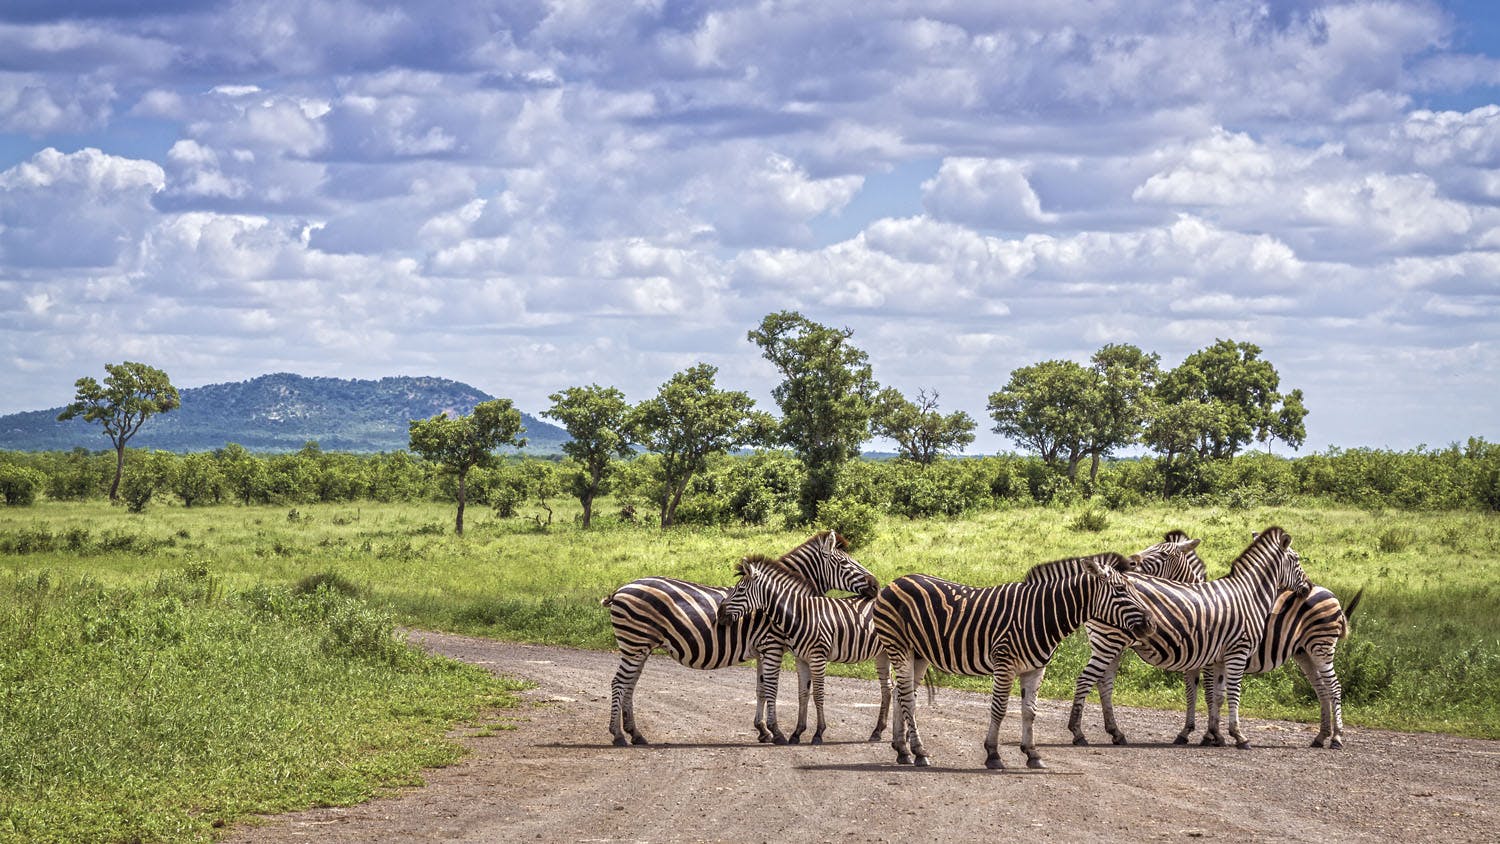 krugger national park - a dazzle of zebras